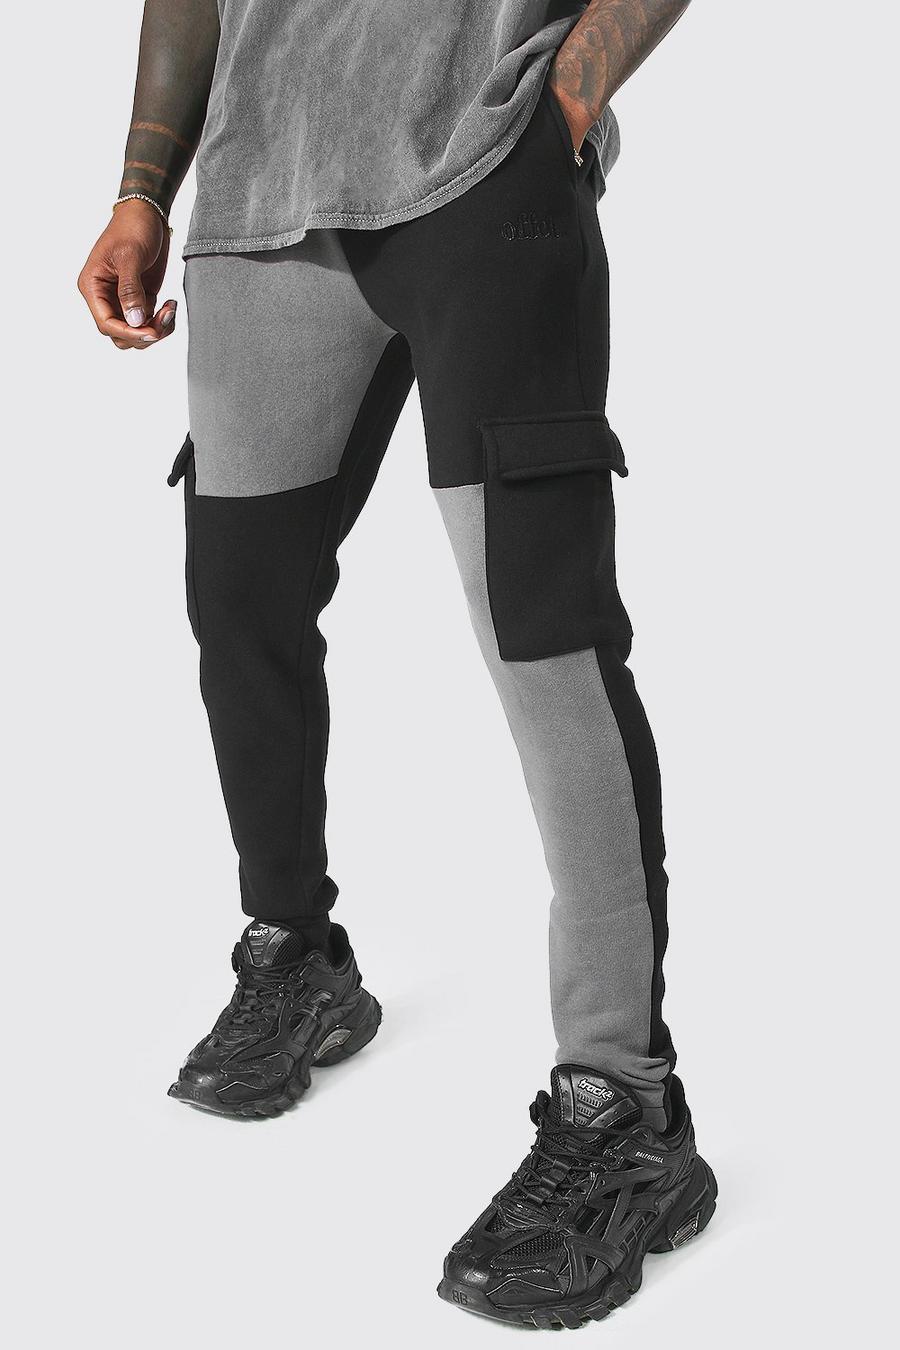 Pantalón deportivo cargo con retazos, Black negro image number 1